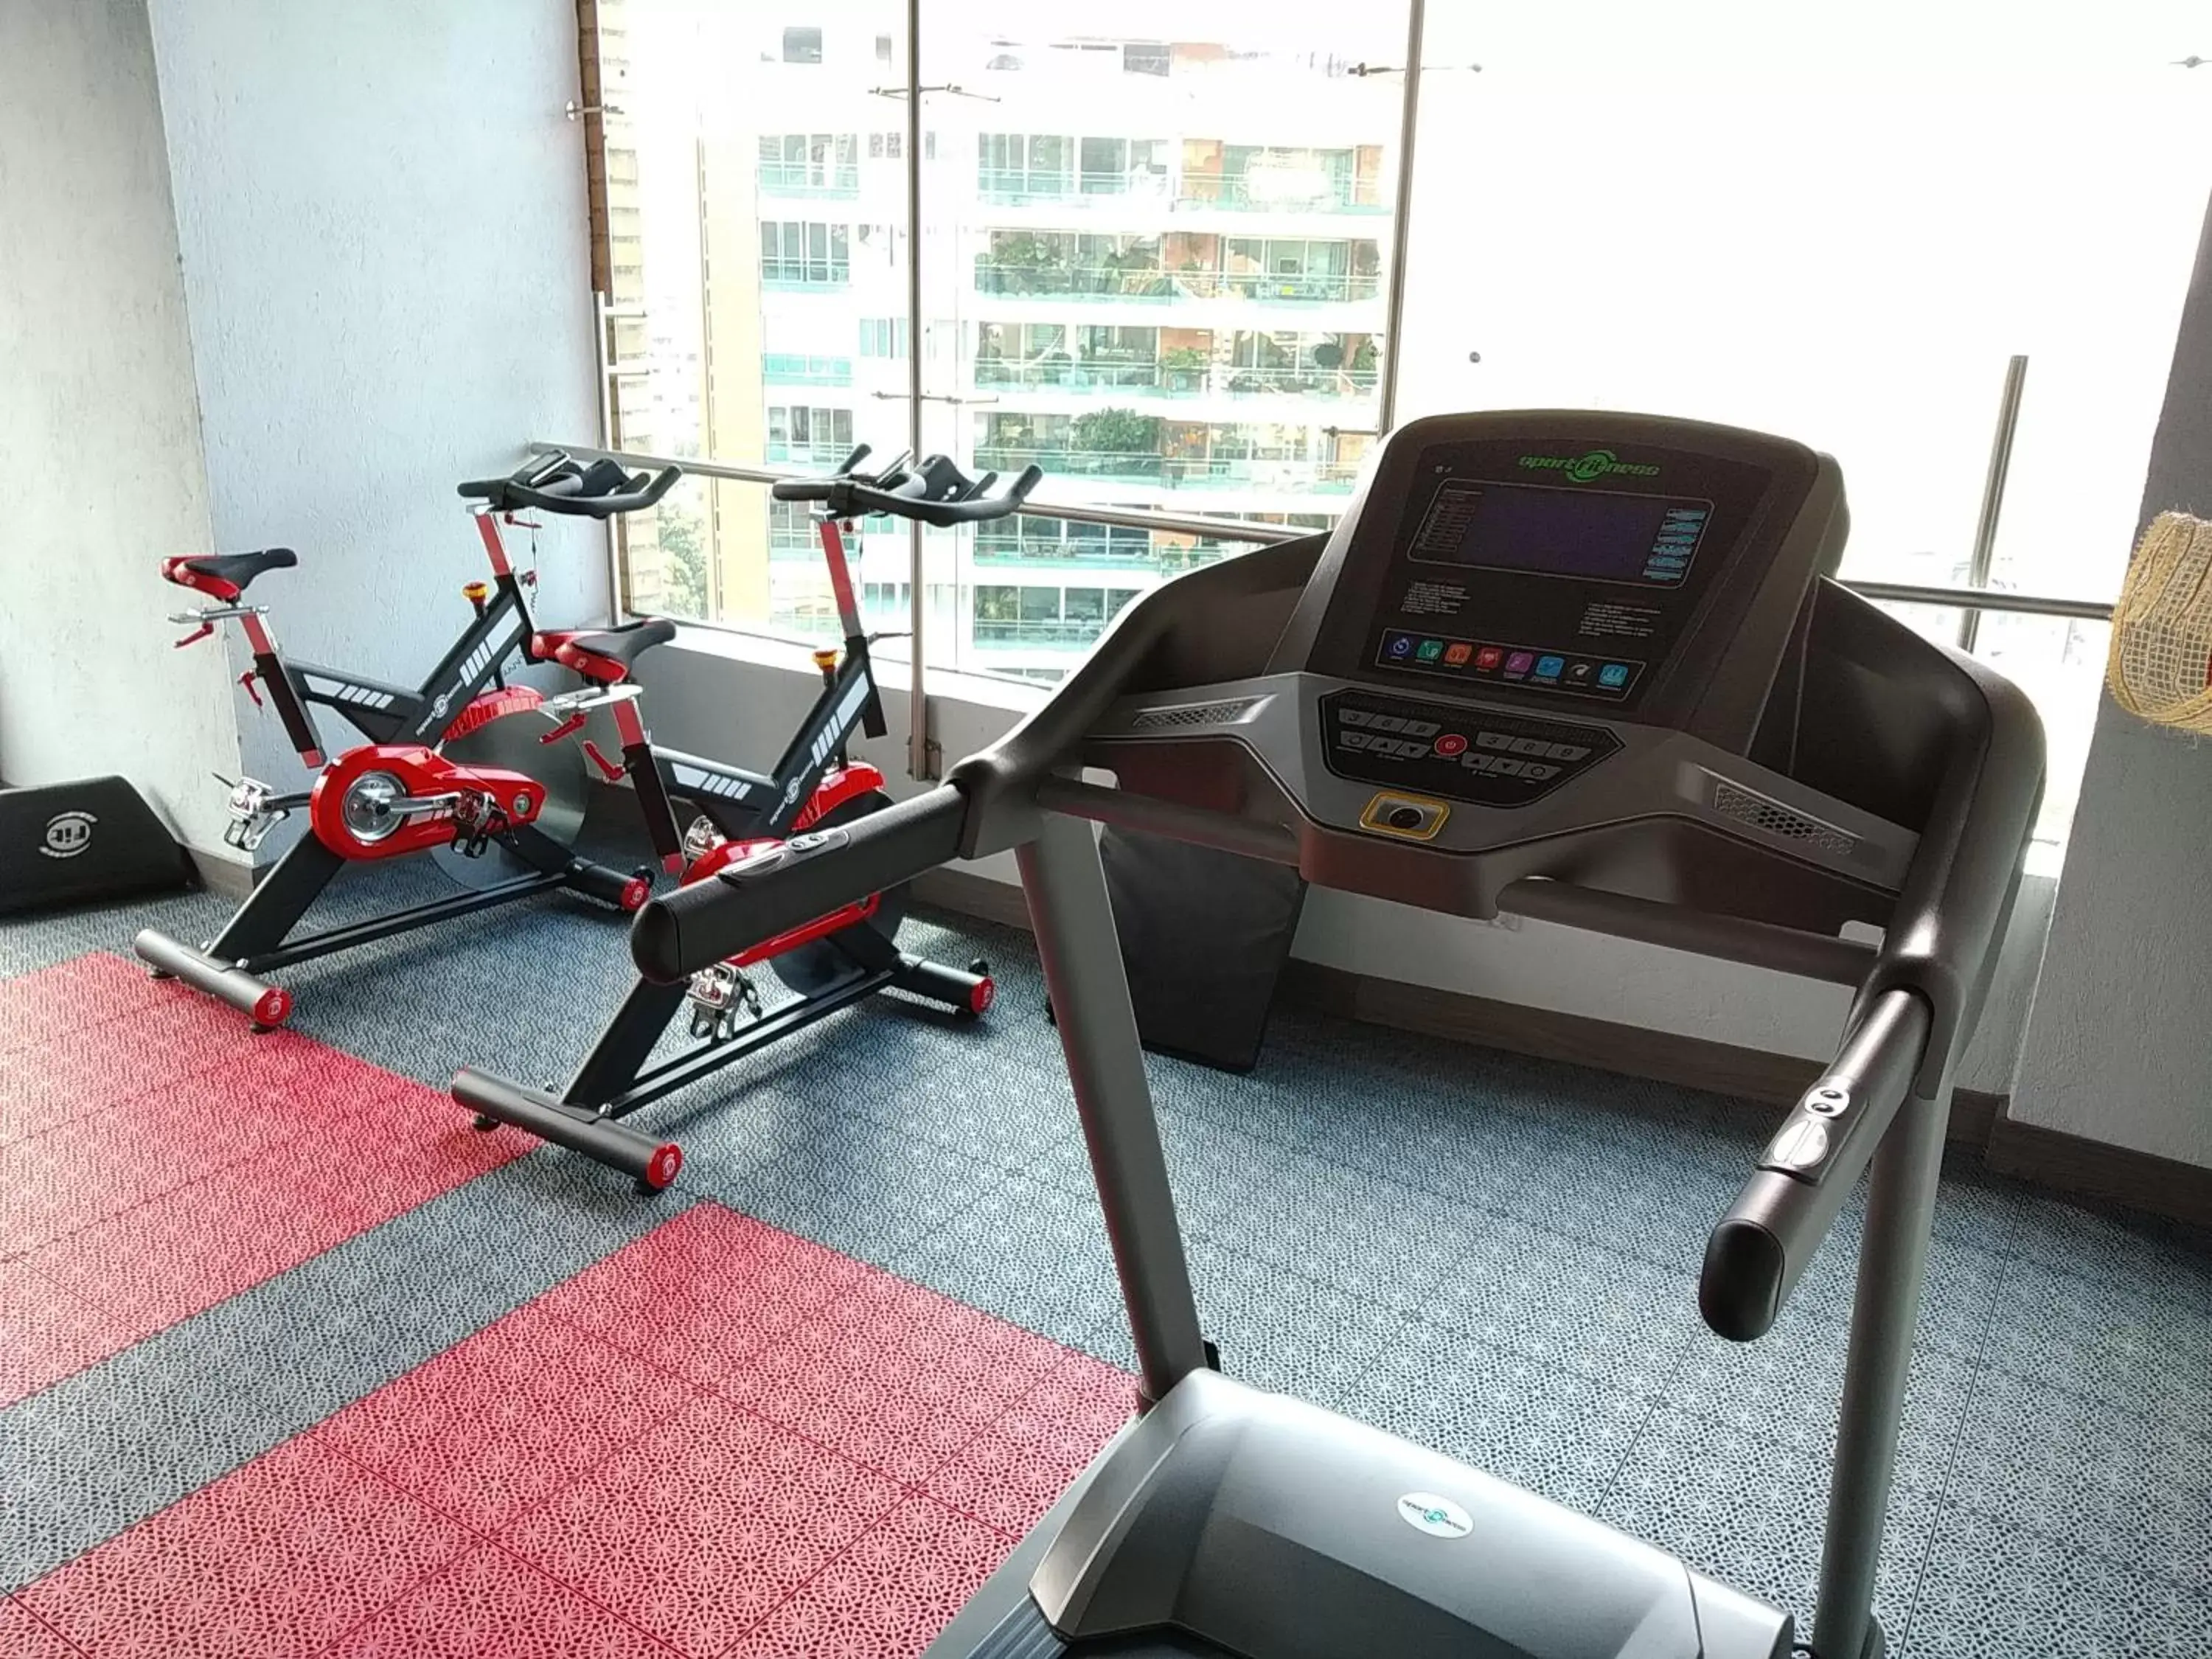 Fitness centre/facilities, Fitness Center/Facilities in Café Hotel Medellín